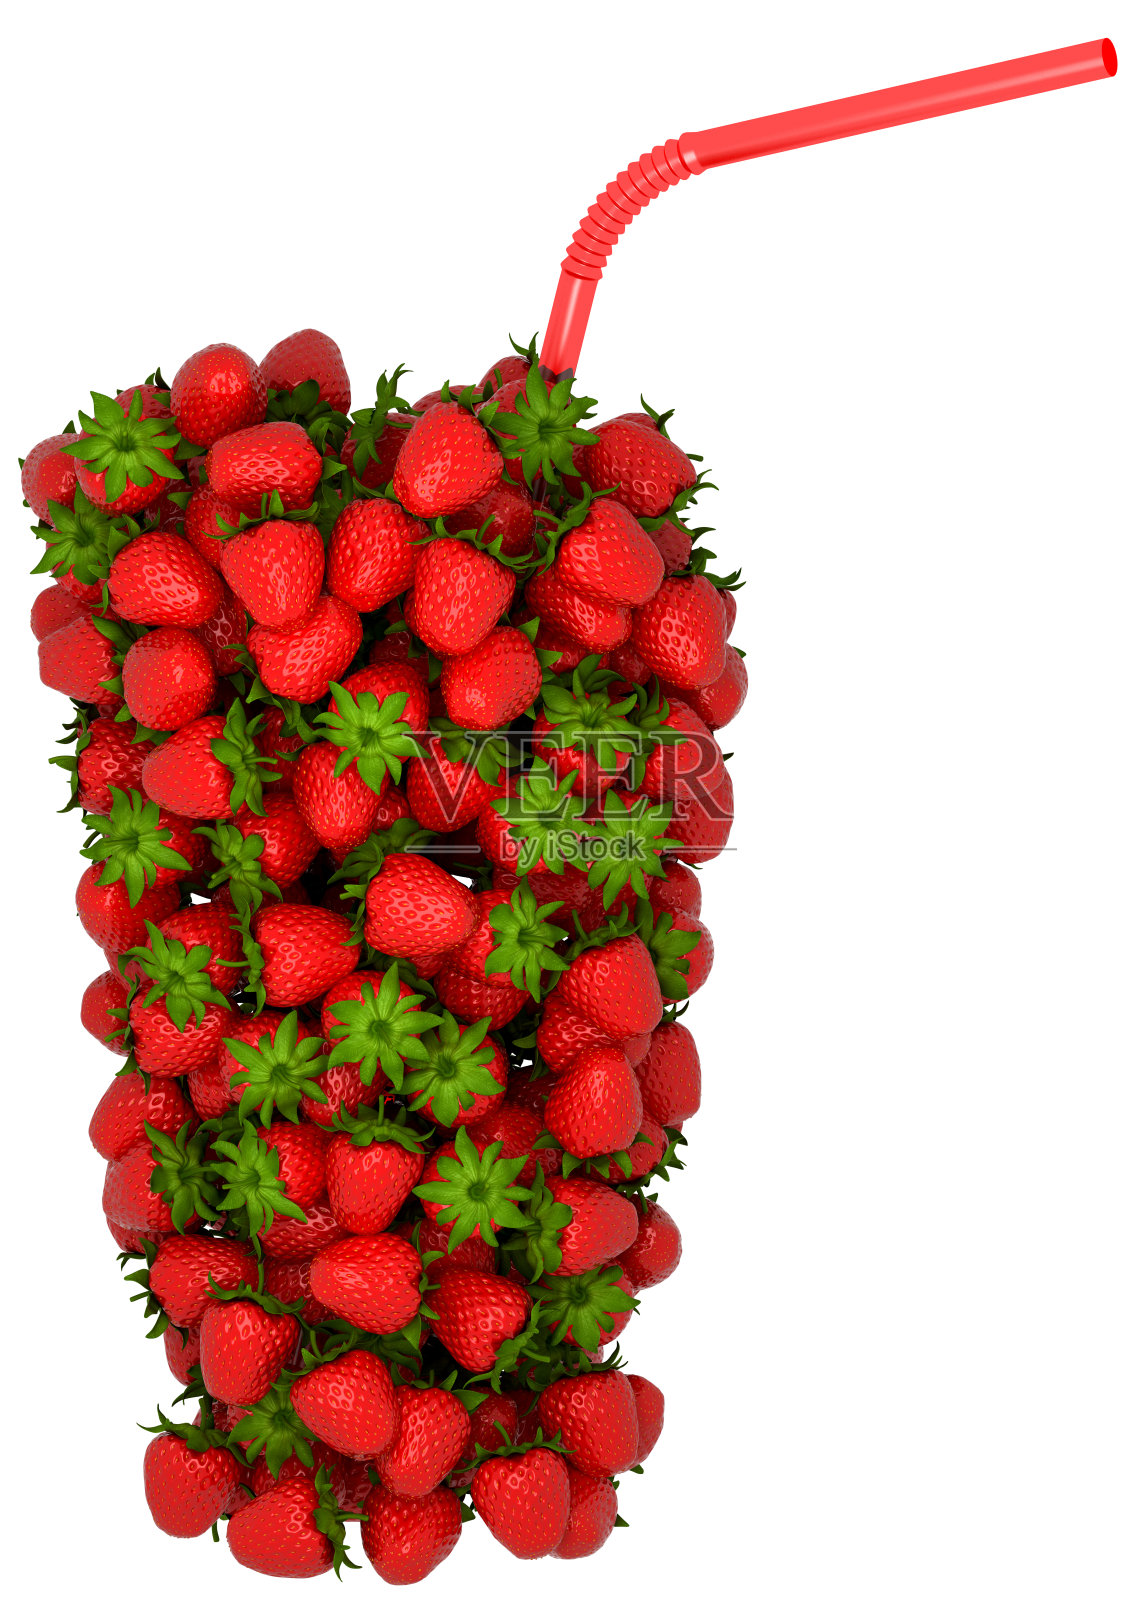 XXXL草莓与稻草组合的玻璃形状插画图片素材